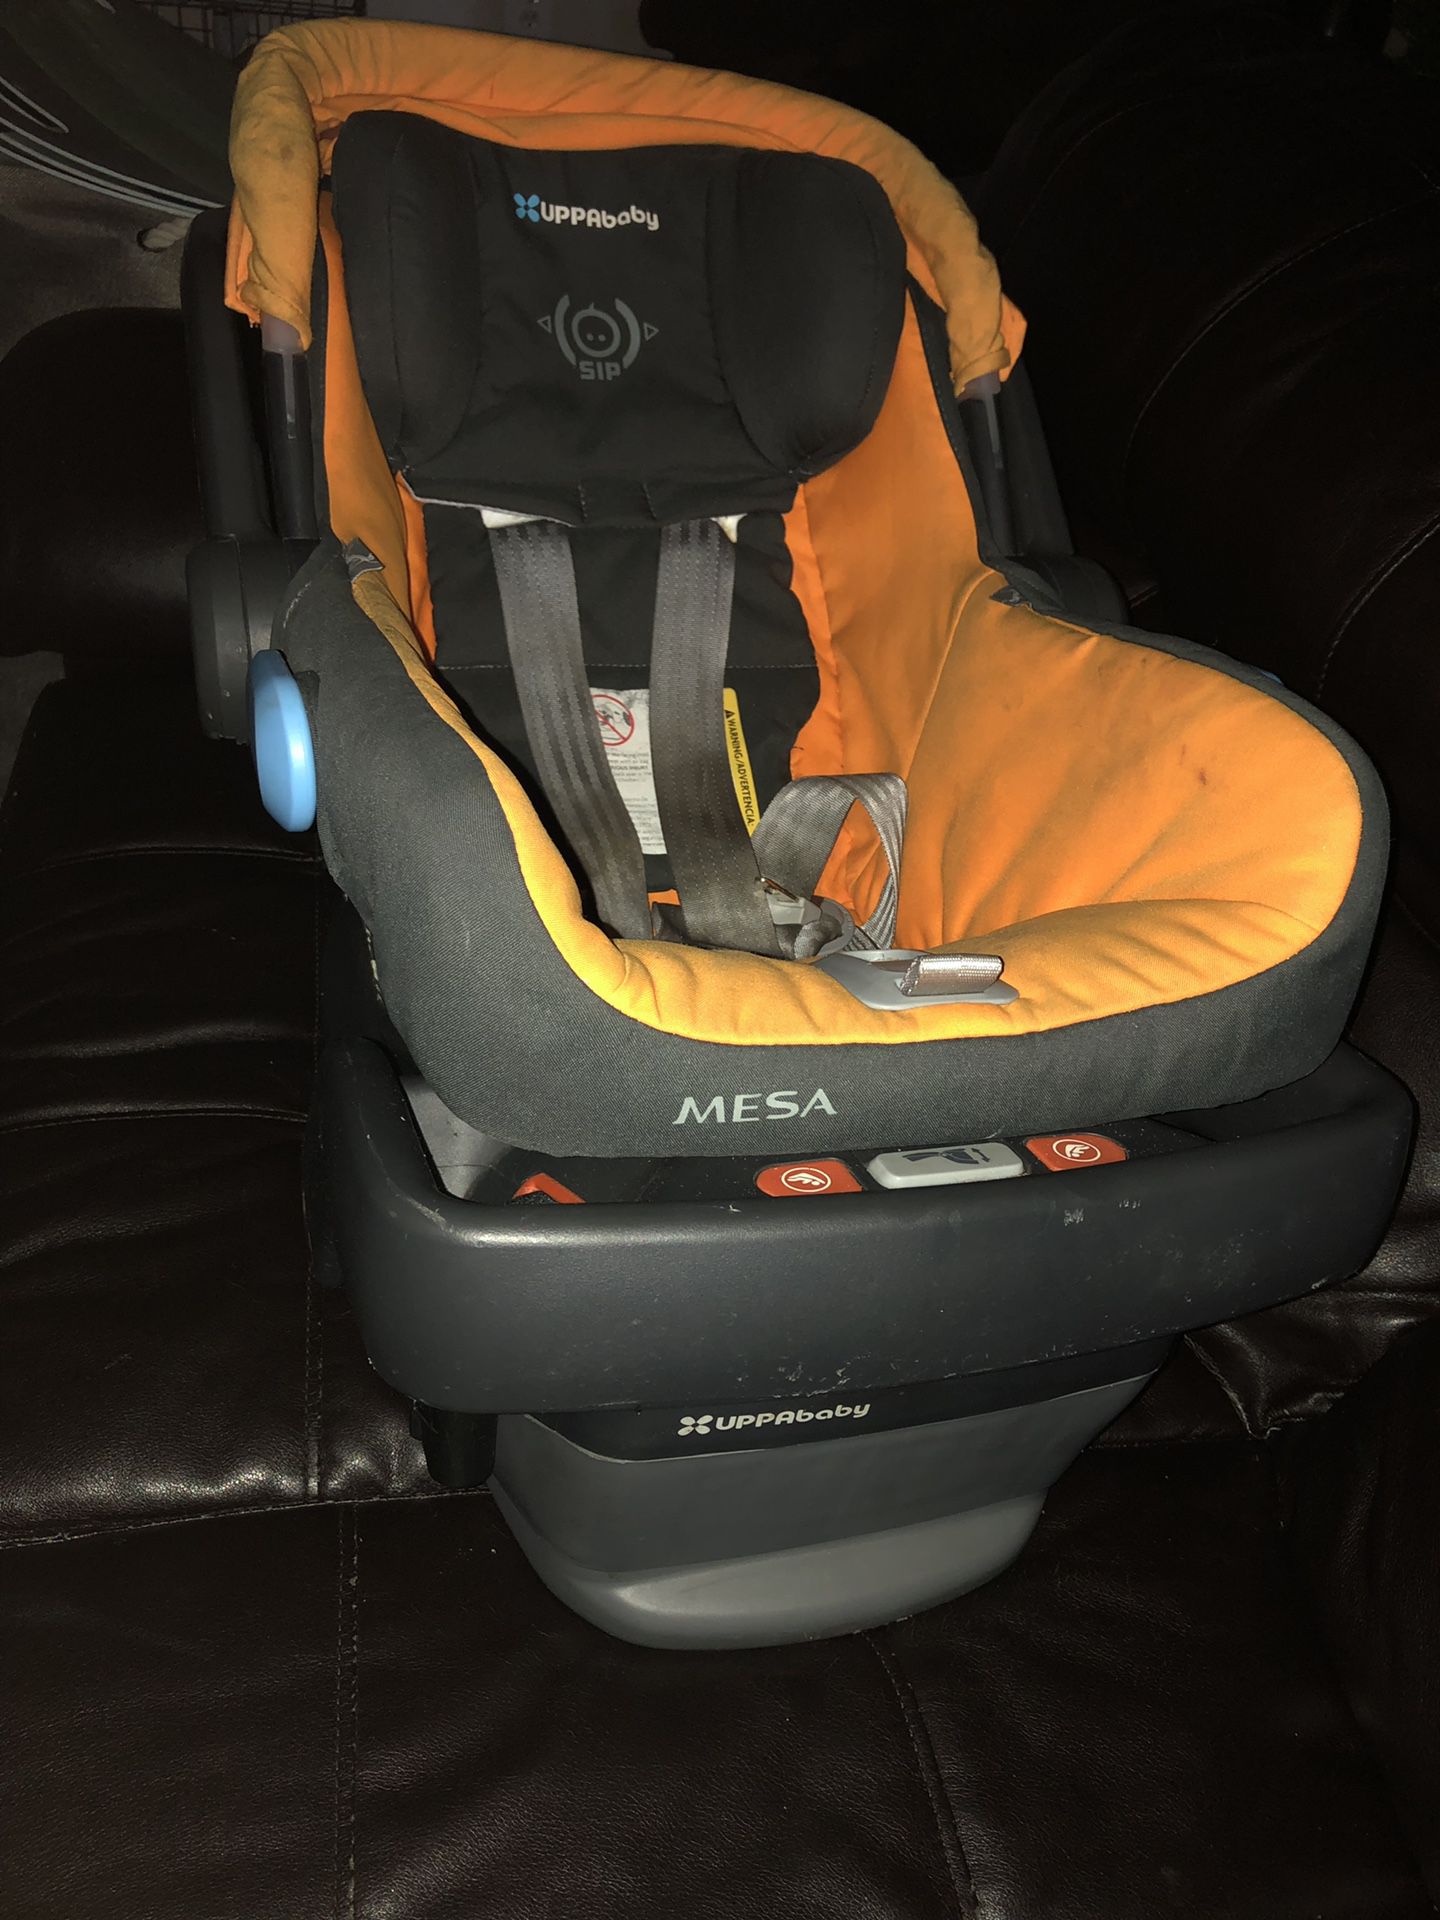 Uppa baby Mesa car seat and base